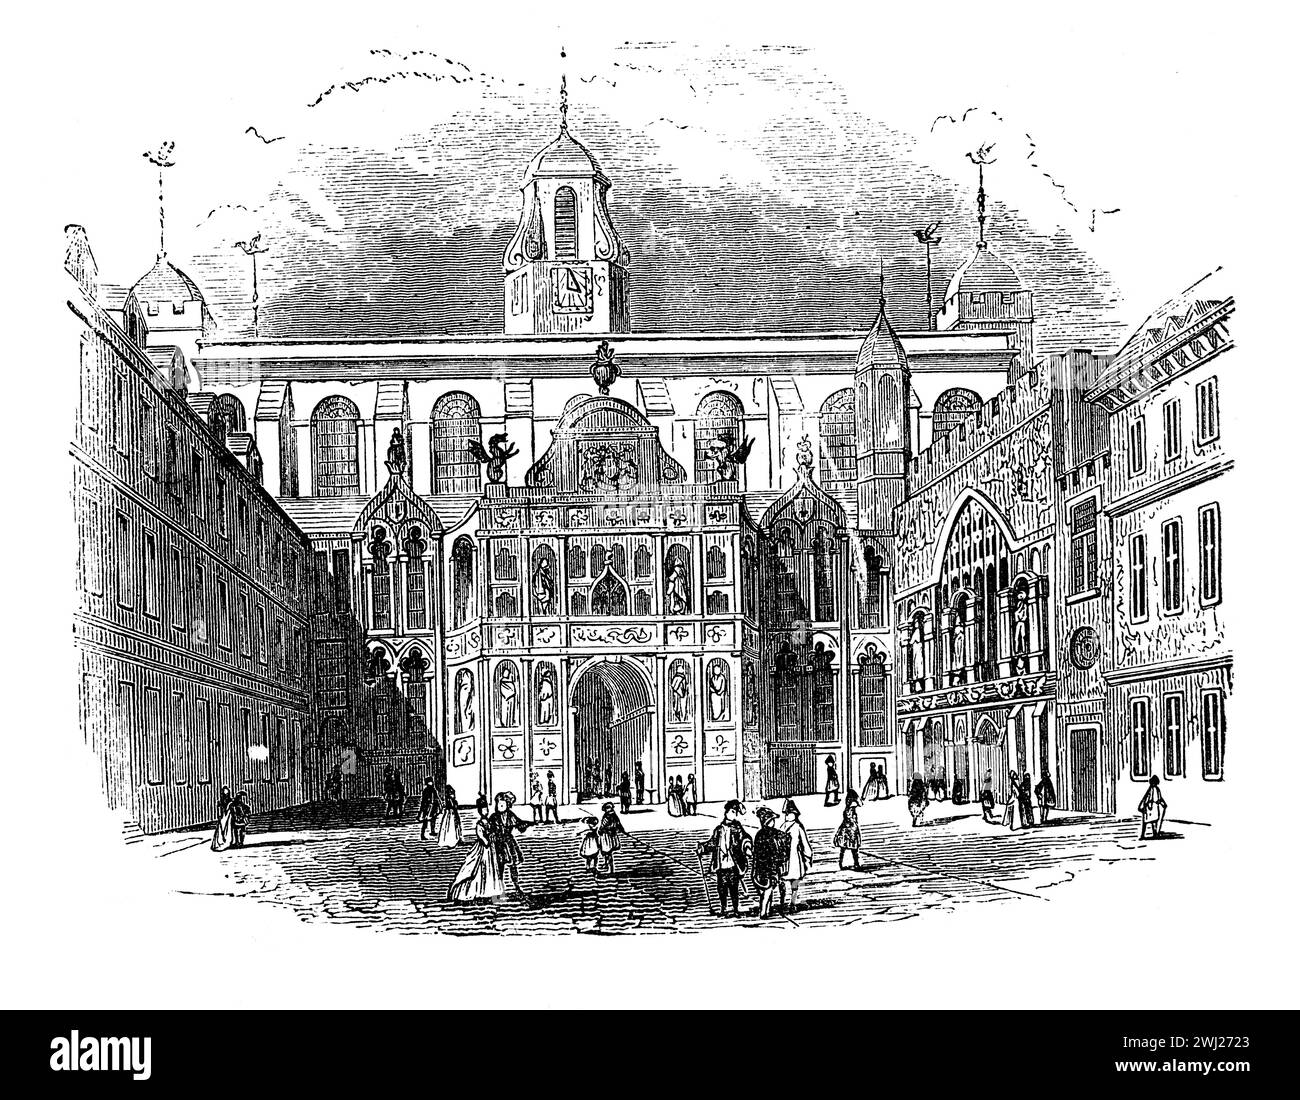 El Guildhall, la ciudad de Londres alrededor de 1750. Ilustración en blanco y negro de la "vieja Inglaterra" publicada por James Sangster en 1860. Foto de stock